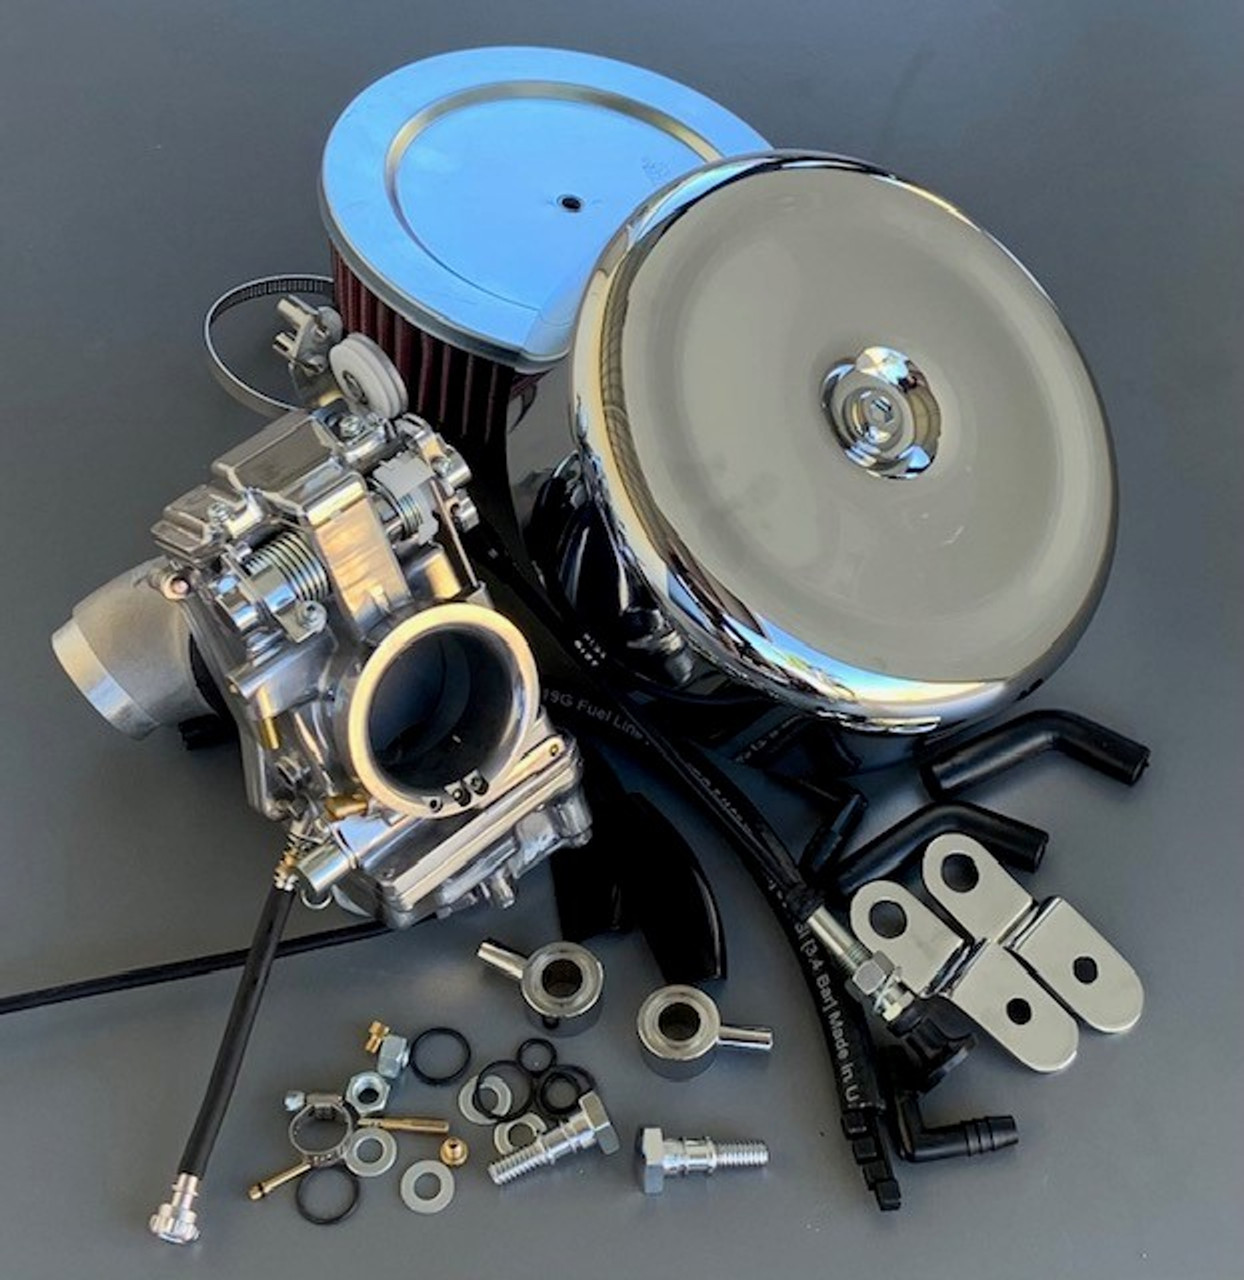 Mikuni HSR45 Total Carburetor Kit For Harley 95 Twin Cam